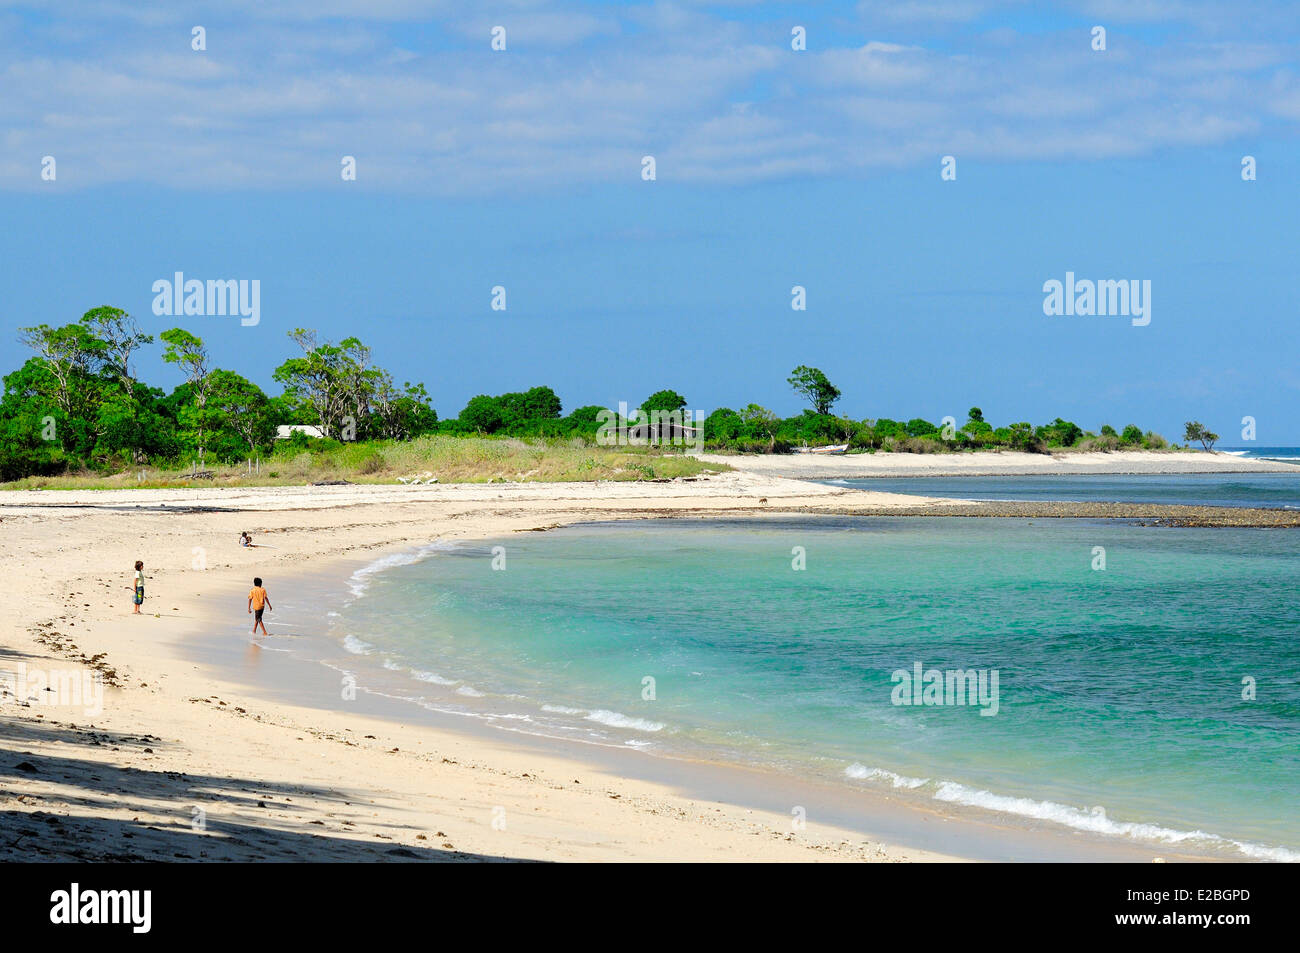 Indonesien, Sumbawa, Pantai Lakey, der Strand ist berühmt für seine Surf-breaks Stockfoto